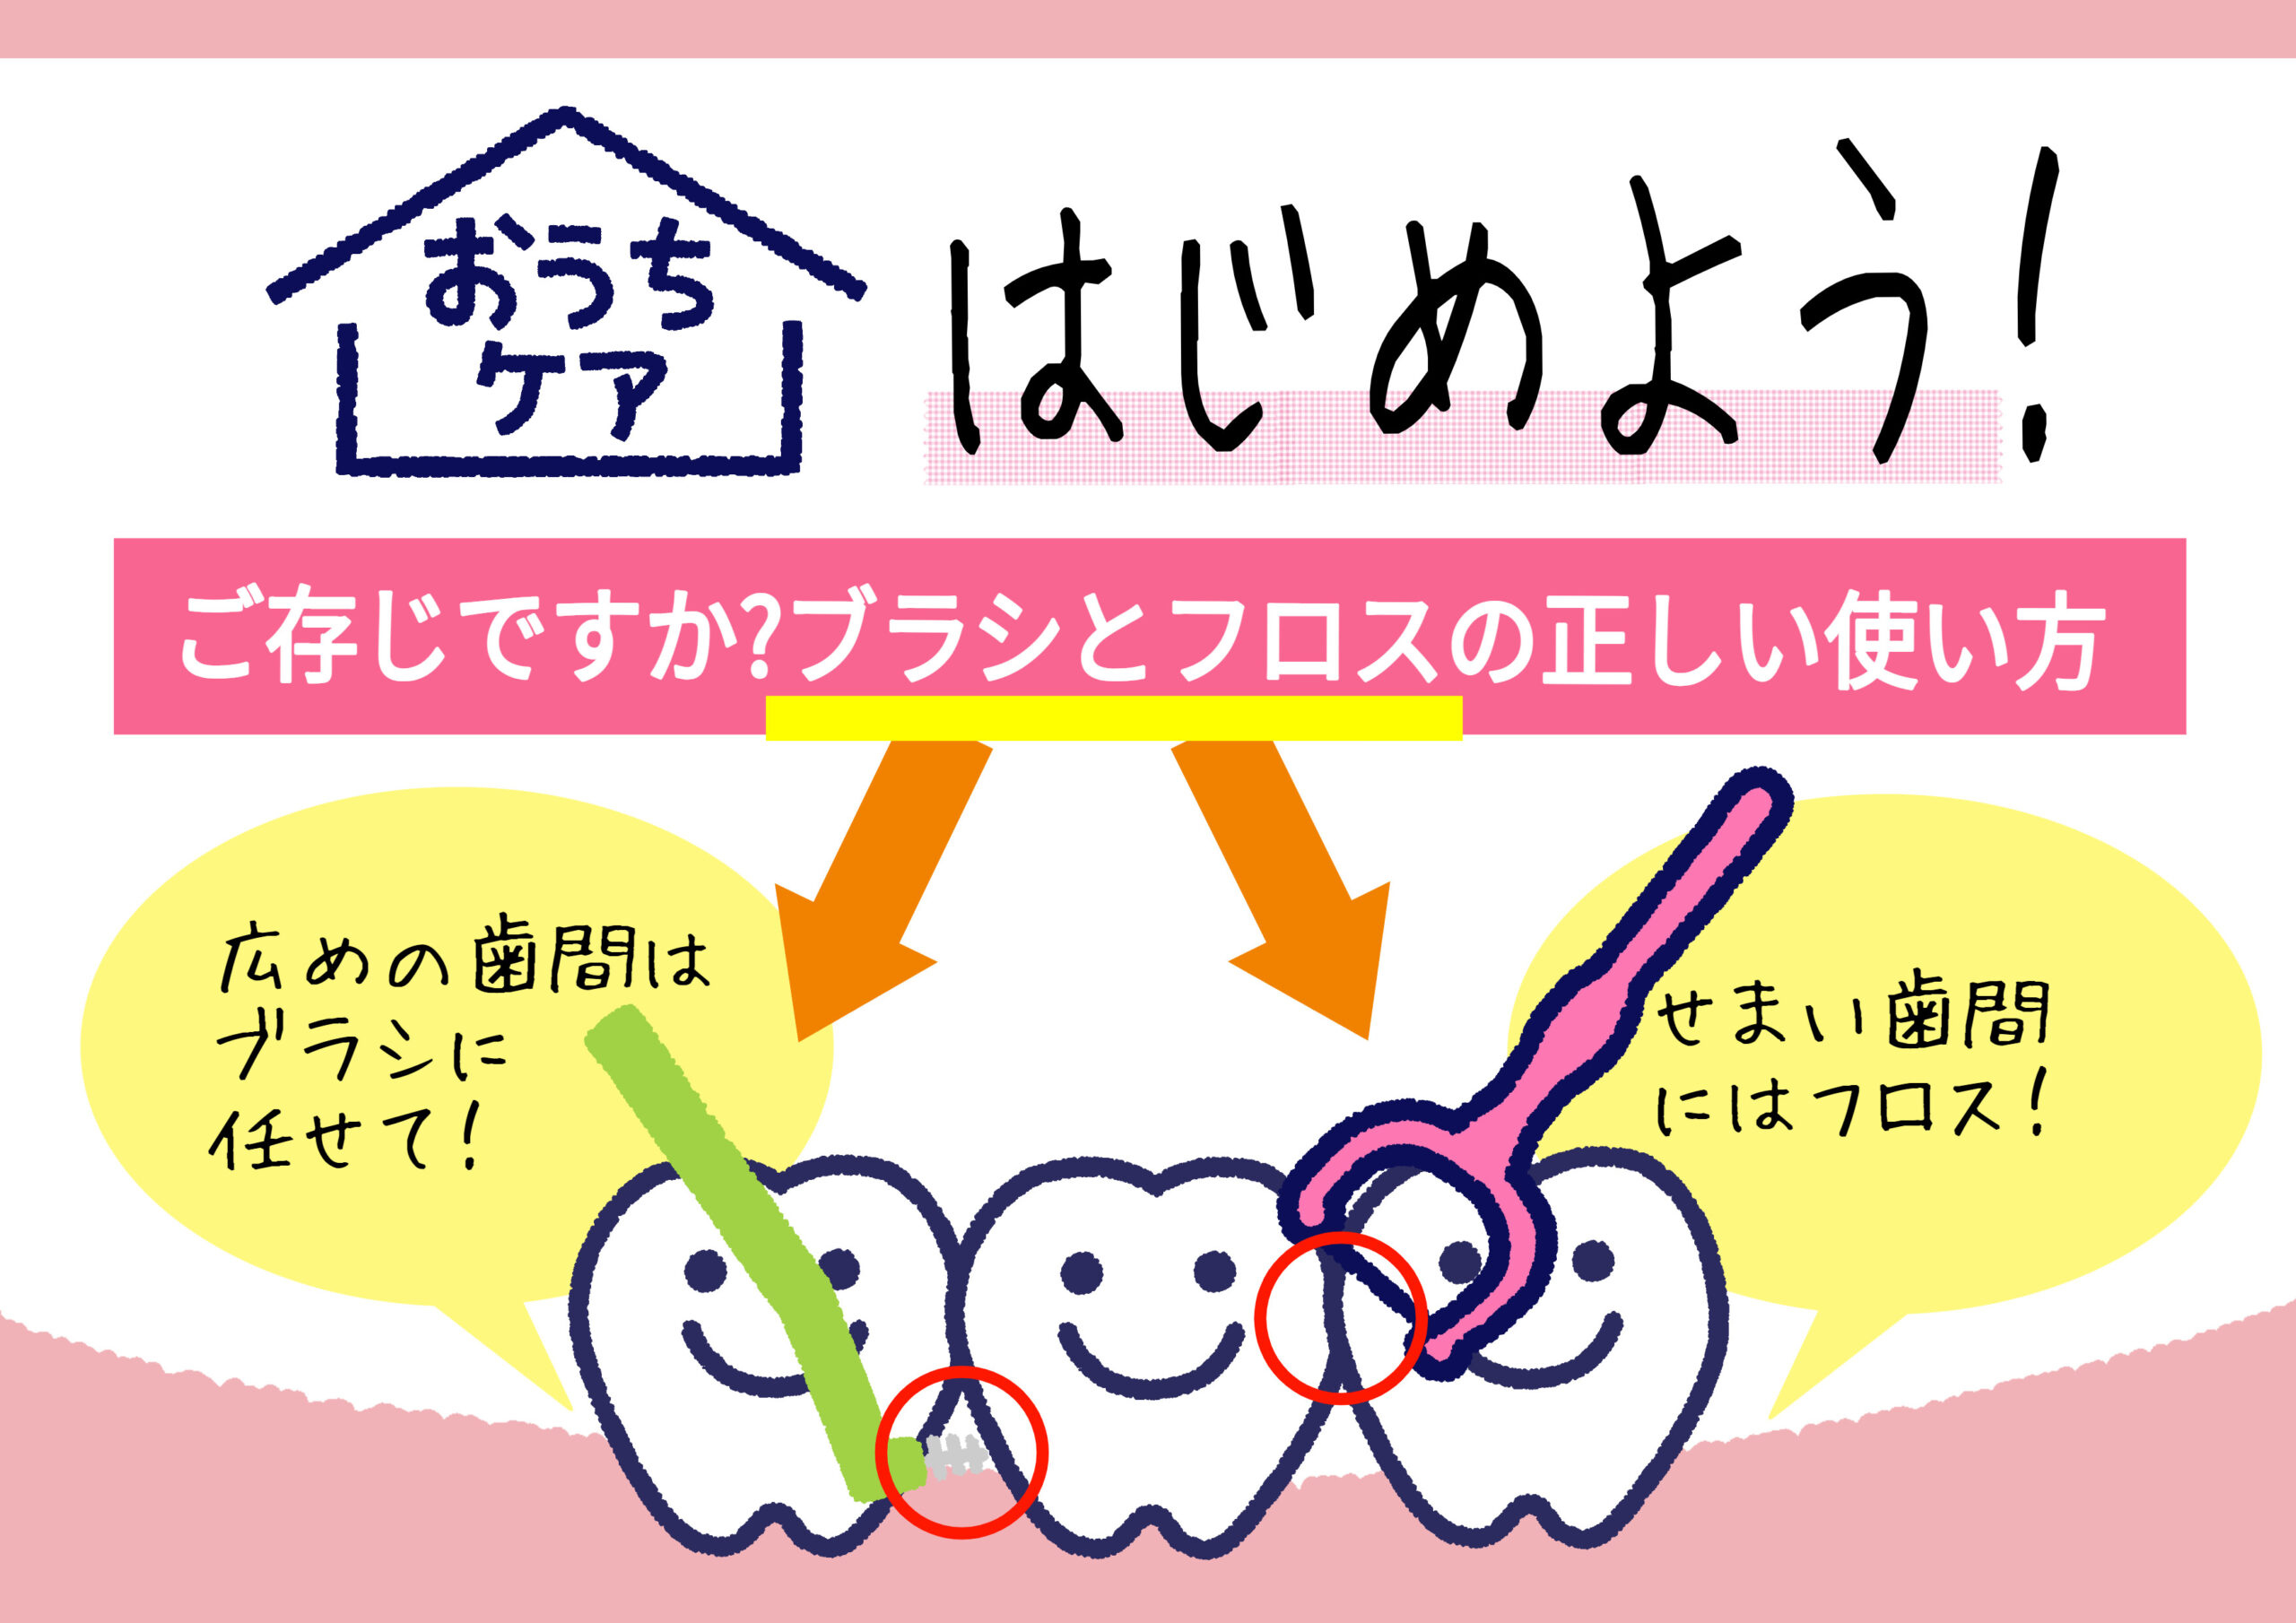 歯科物販 歯医者さん向け販促popづくりのヒント イラストで伝わる Popkit Blog ポップキットブログ